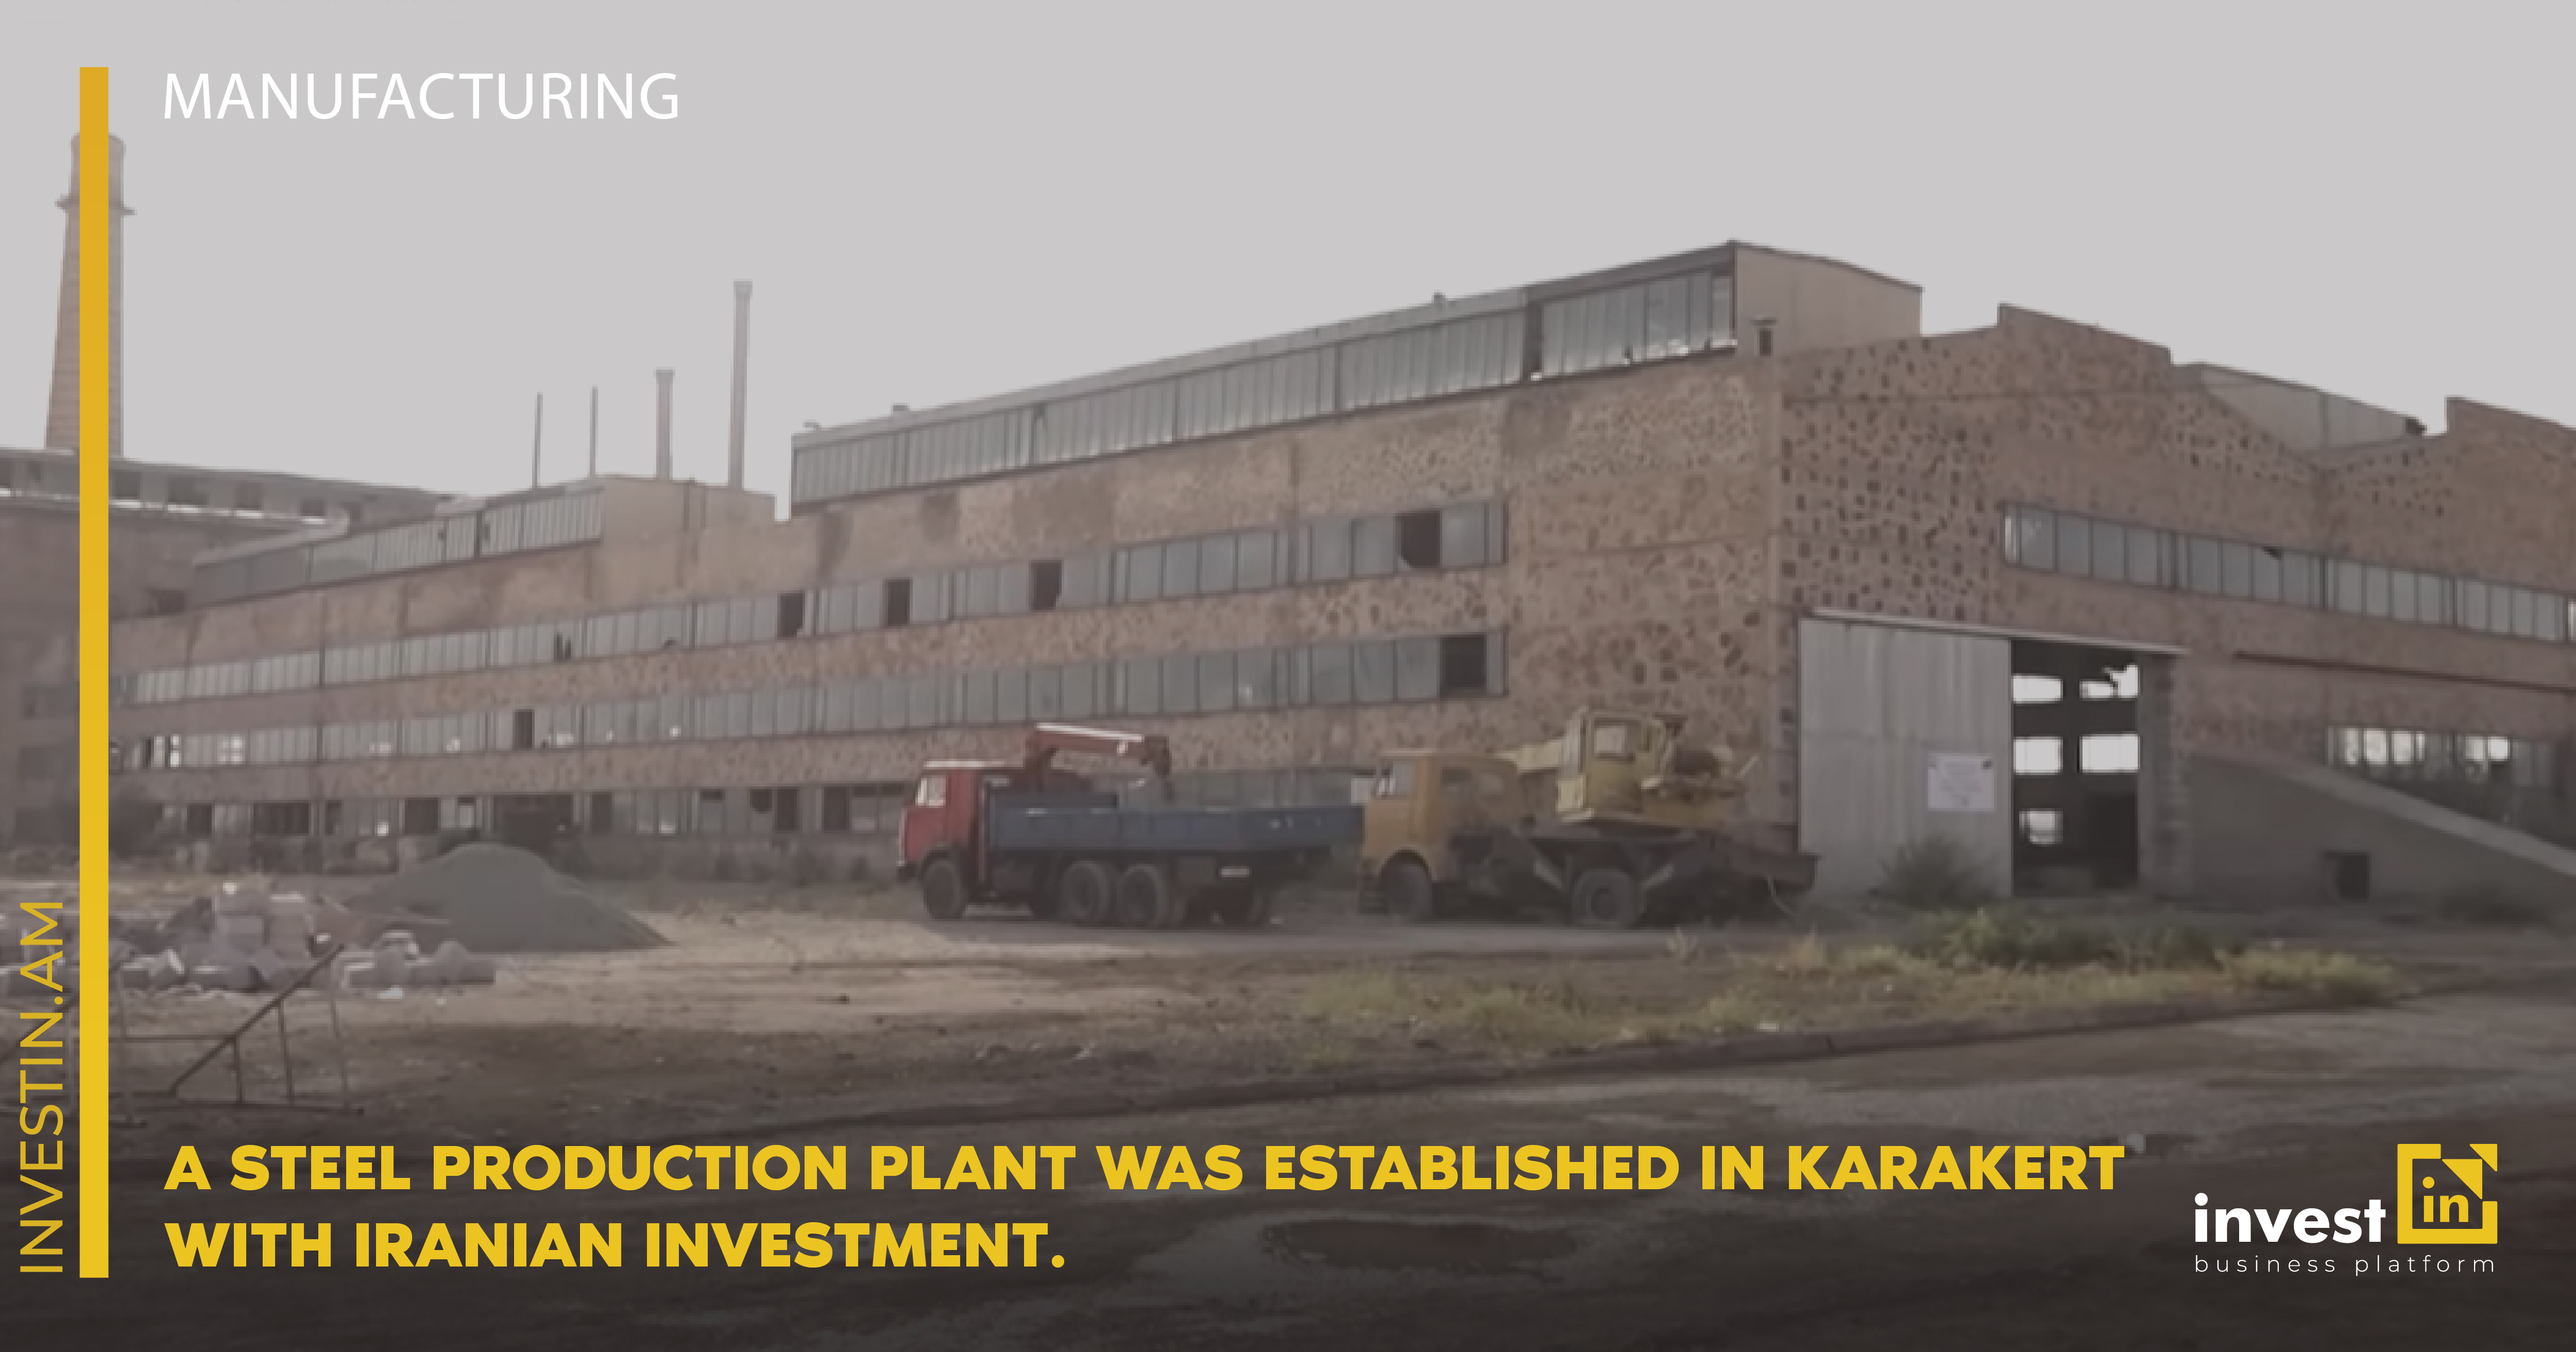 Իրանական ներդրմամբ Քարակերտում պողպատի արտադրության գործարան է հիմնվել